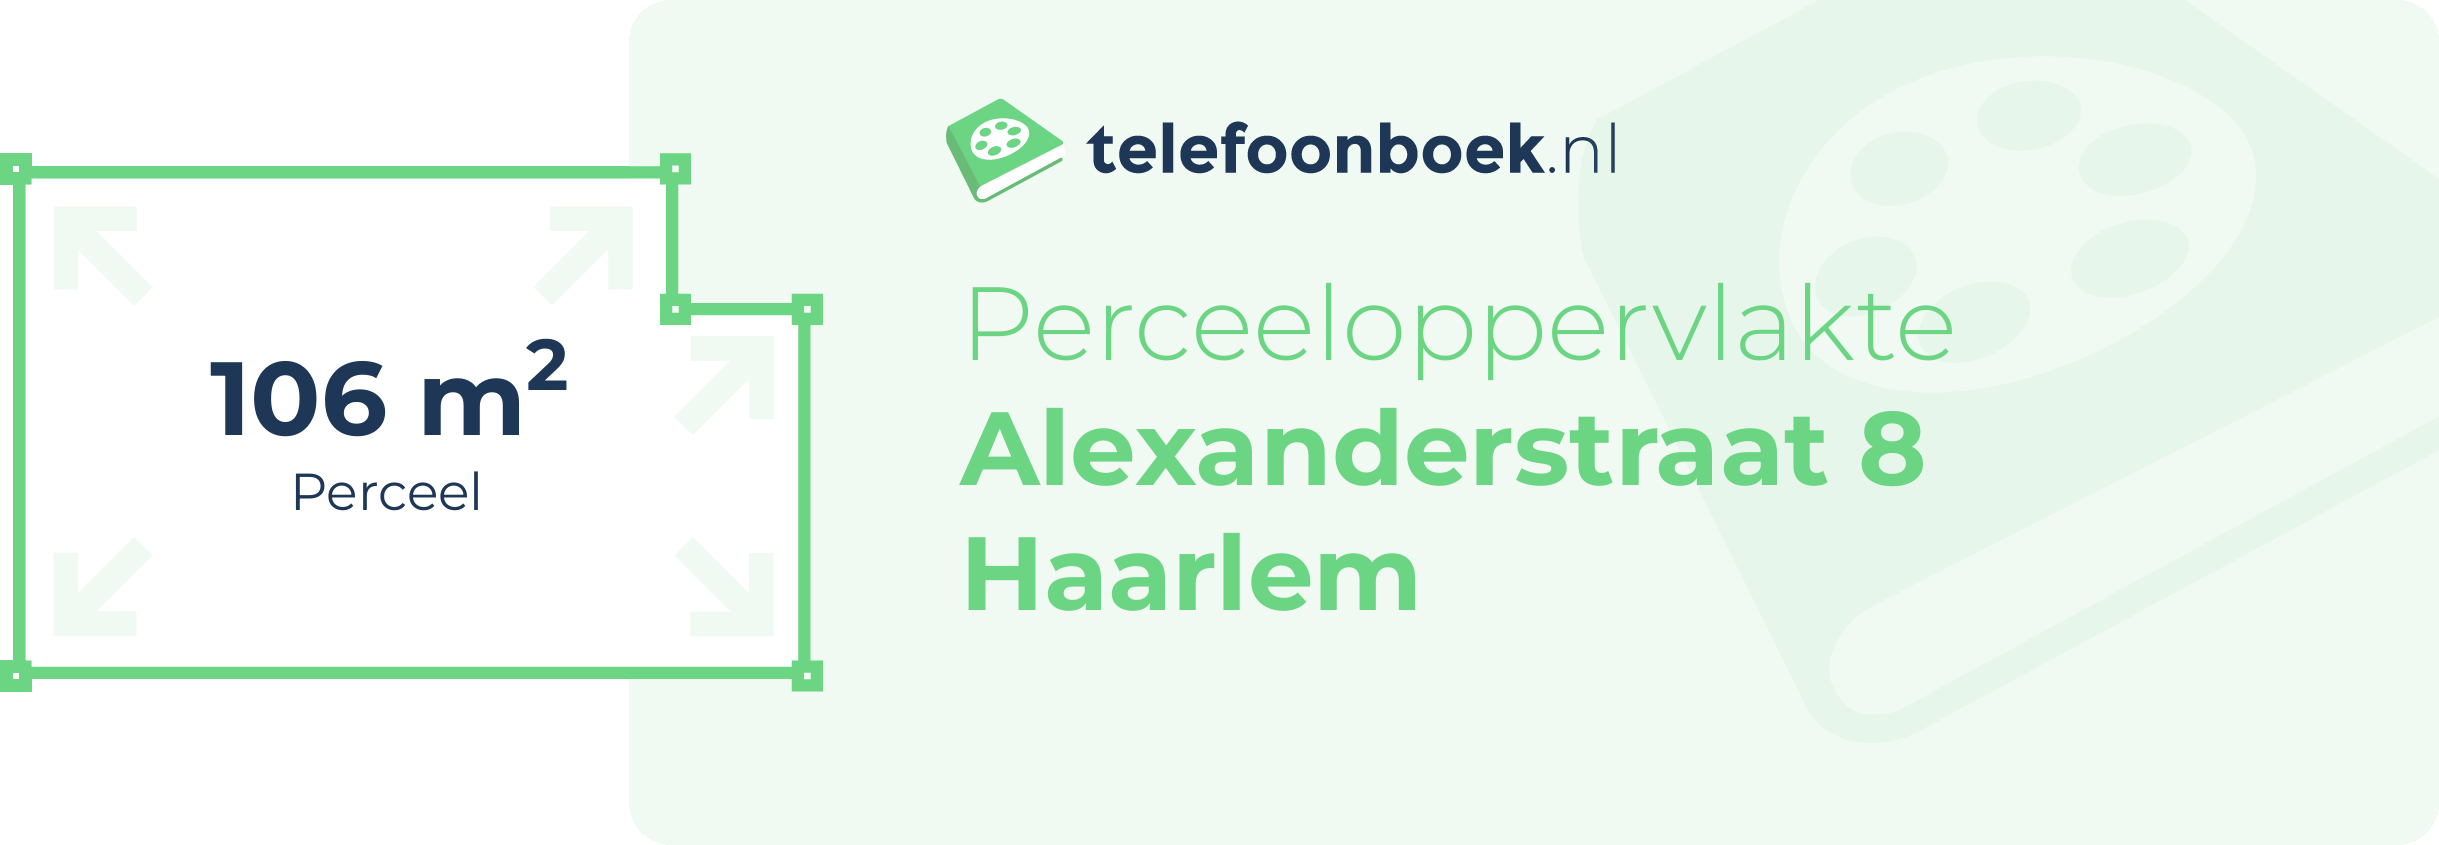 Perceeloppervlakte Alexanderstraat 8 Haarlem